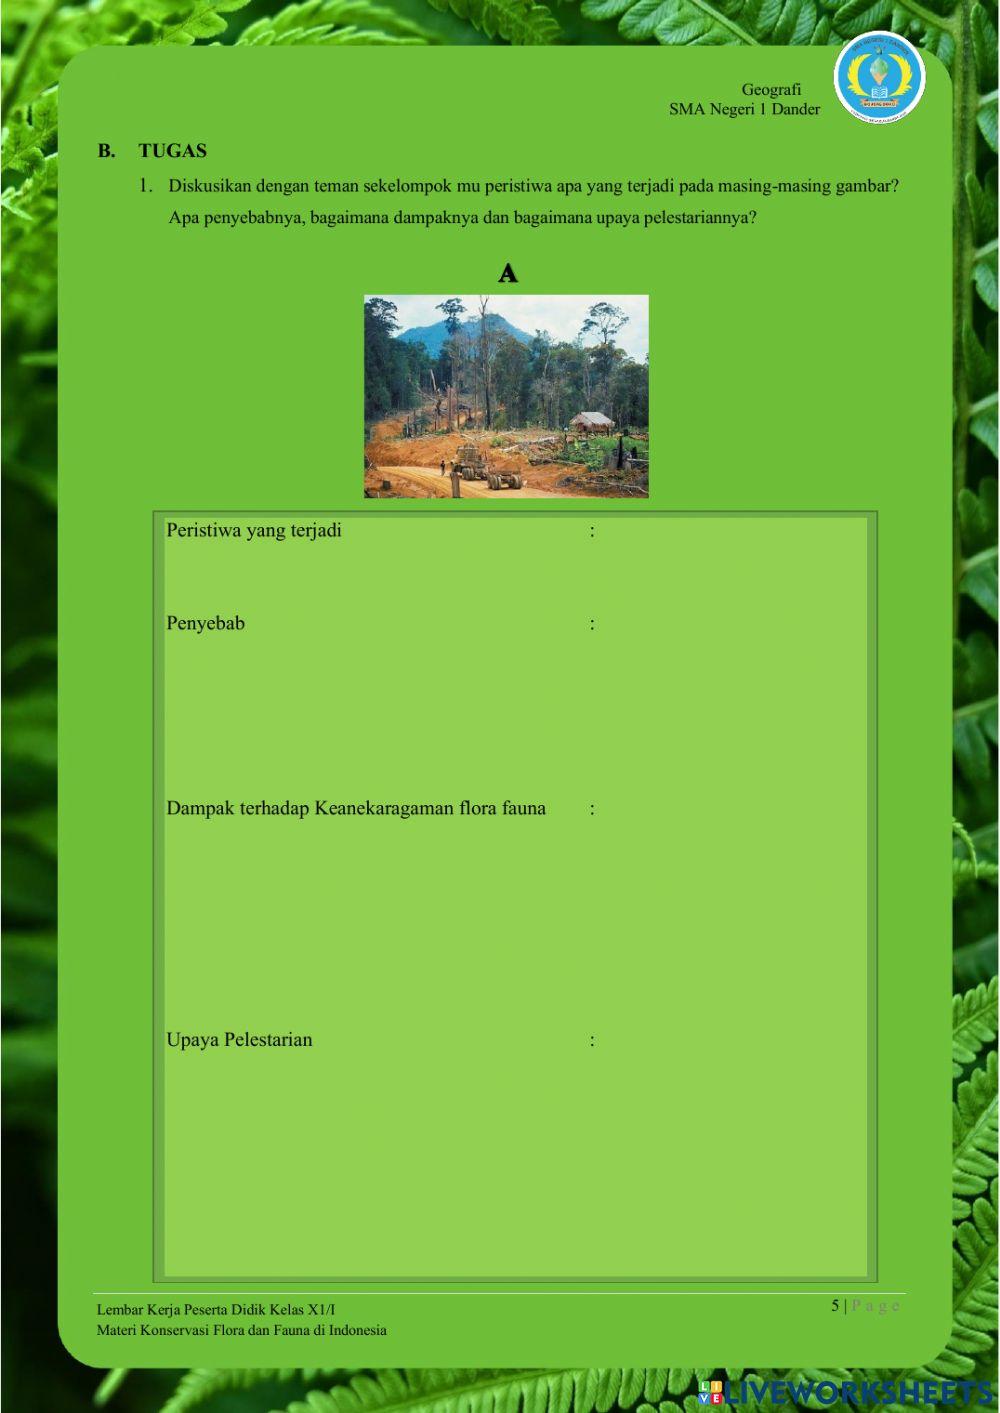 LKPD-1.Konservasi Flora dan Fauna di Indonesia